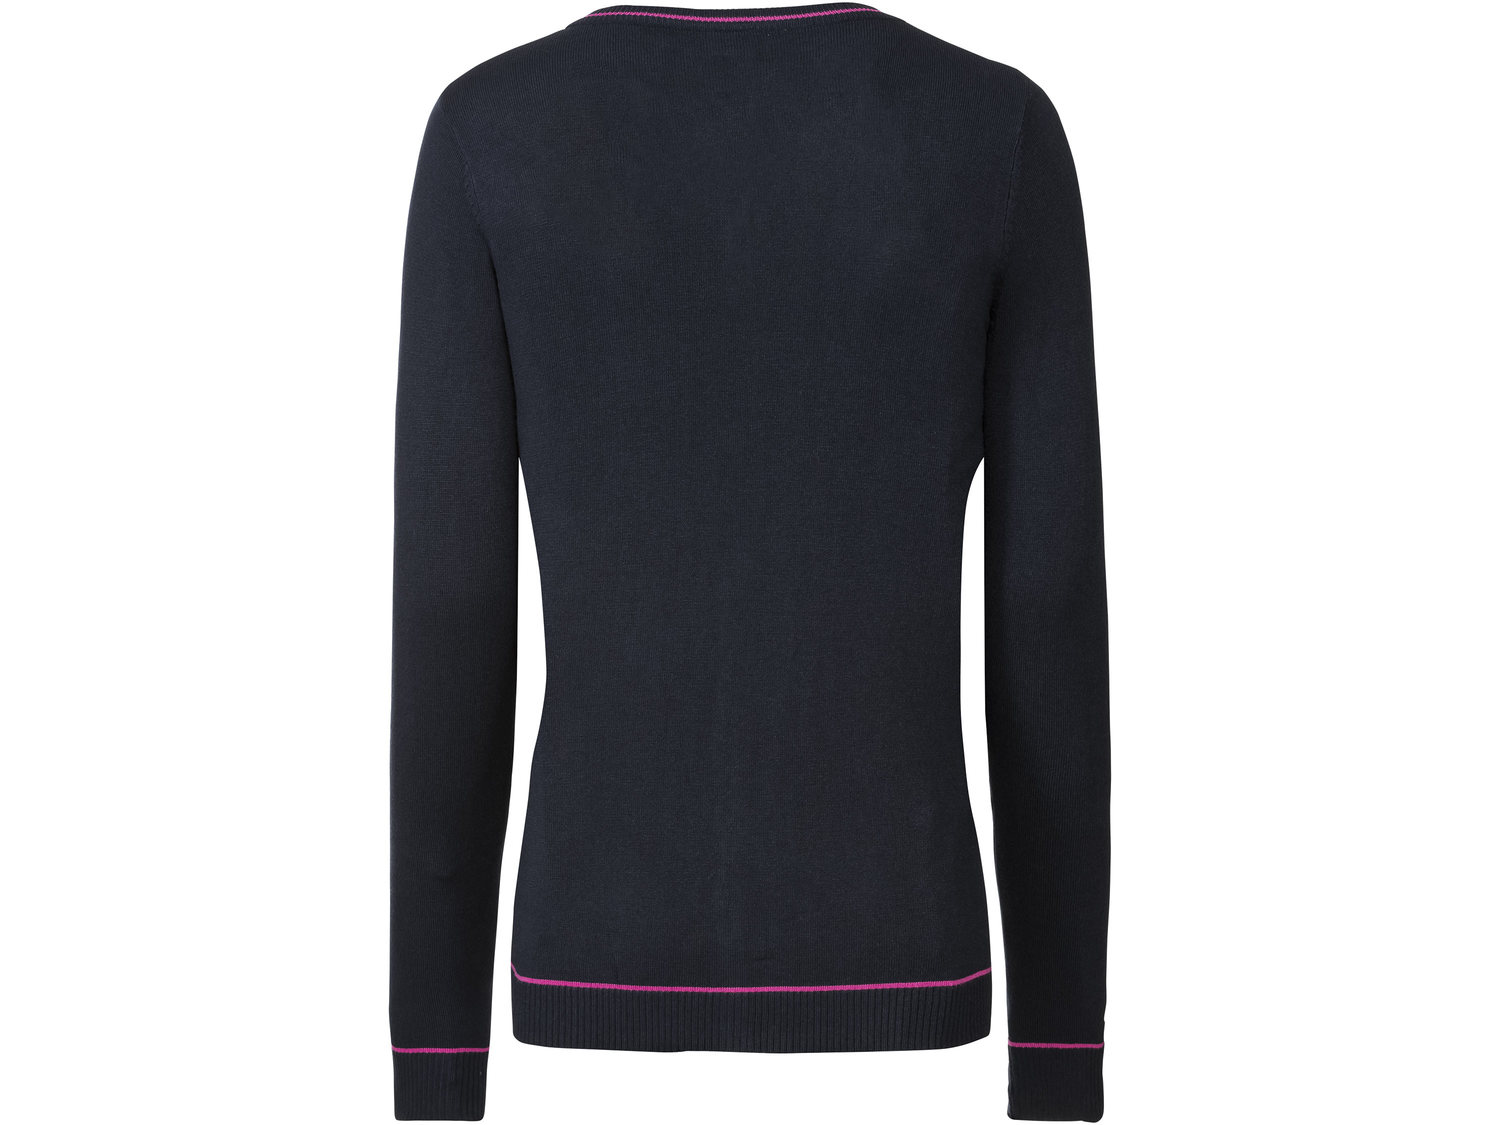 Sweter z wiskozą Esmara, cena 29,99 PLN 
- przyjemnie miękki dzięki wiskozie
- ...